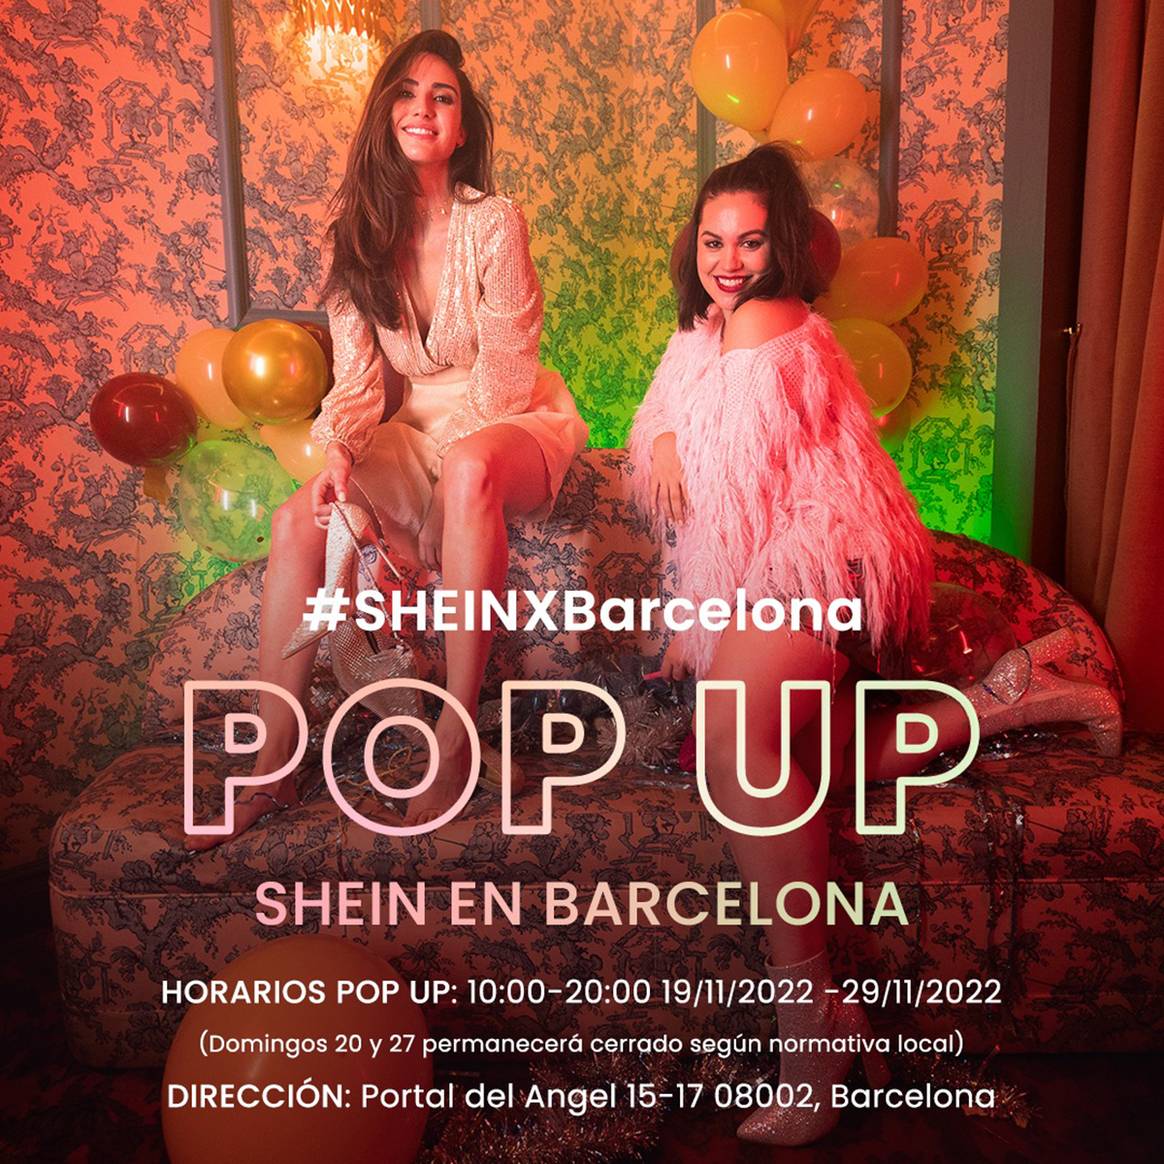 Photo Credits: Cartel promocional de la nueva pop-up de Shein en Barcelona. Shein, página oficial.